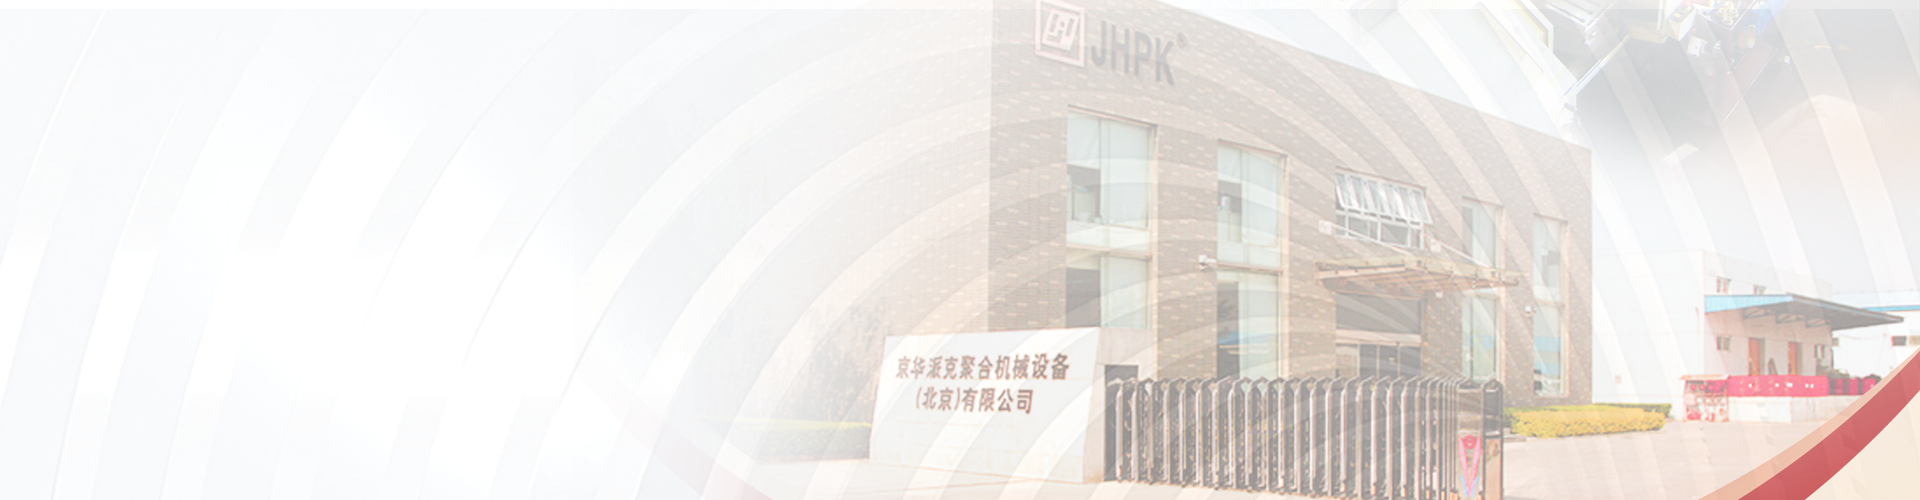  北京京华派克聚合机械设备有限公司